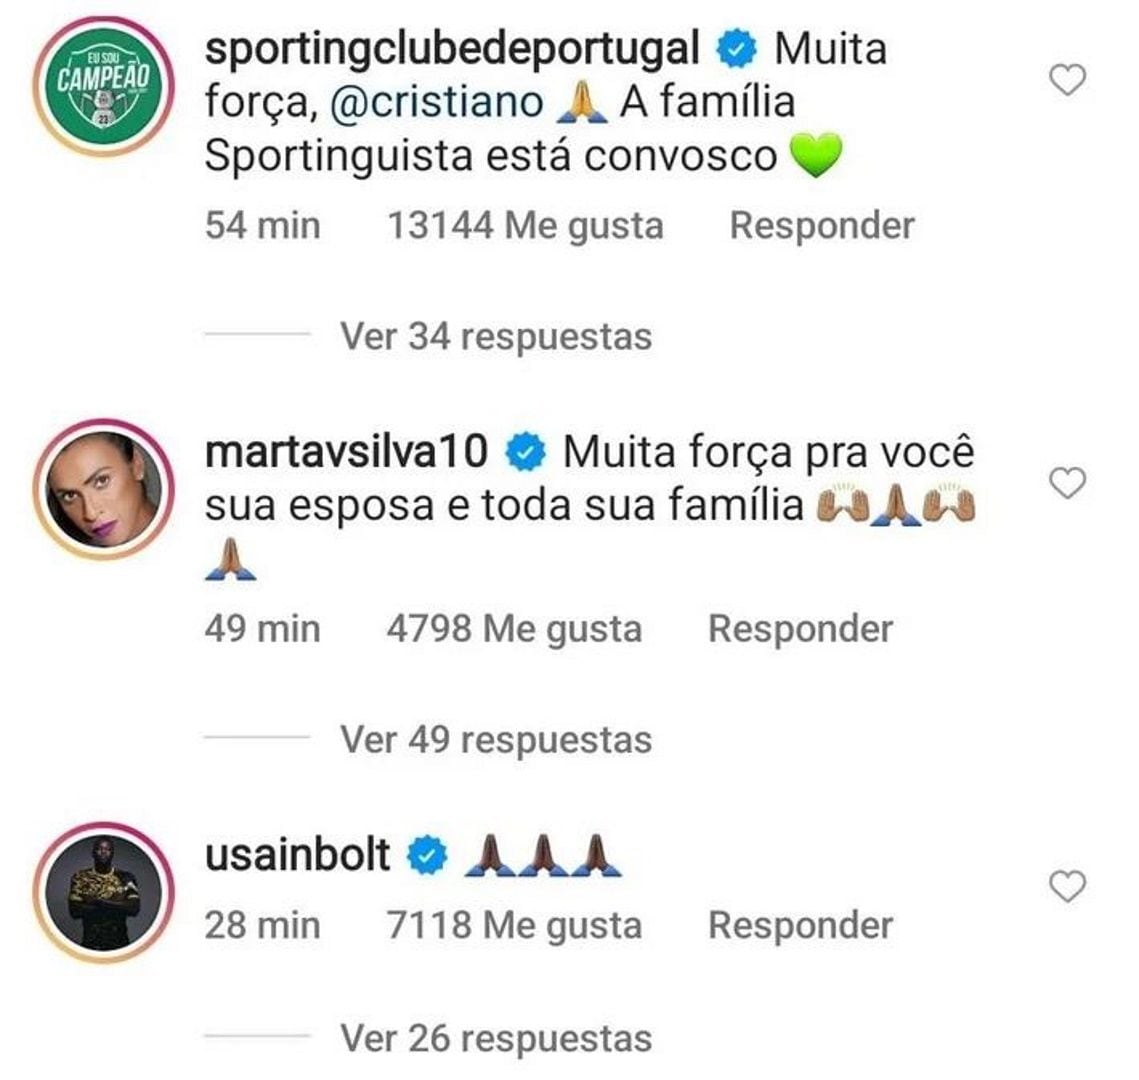 El club portugués, la futbolista brasileña Marta Silva y el ex atleta Usain Bolt reaccionaron de diferente manera ante la triste noticia